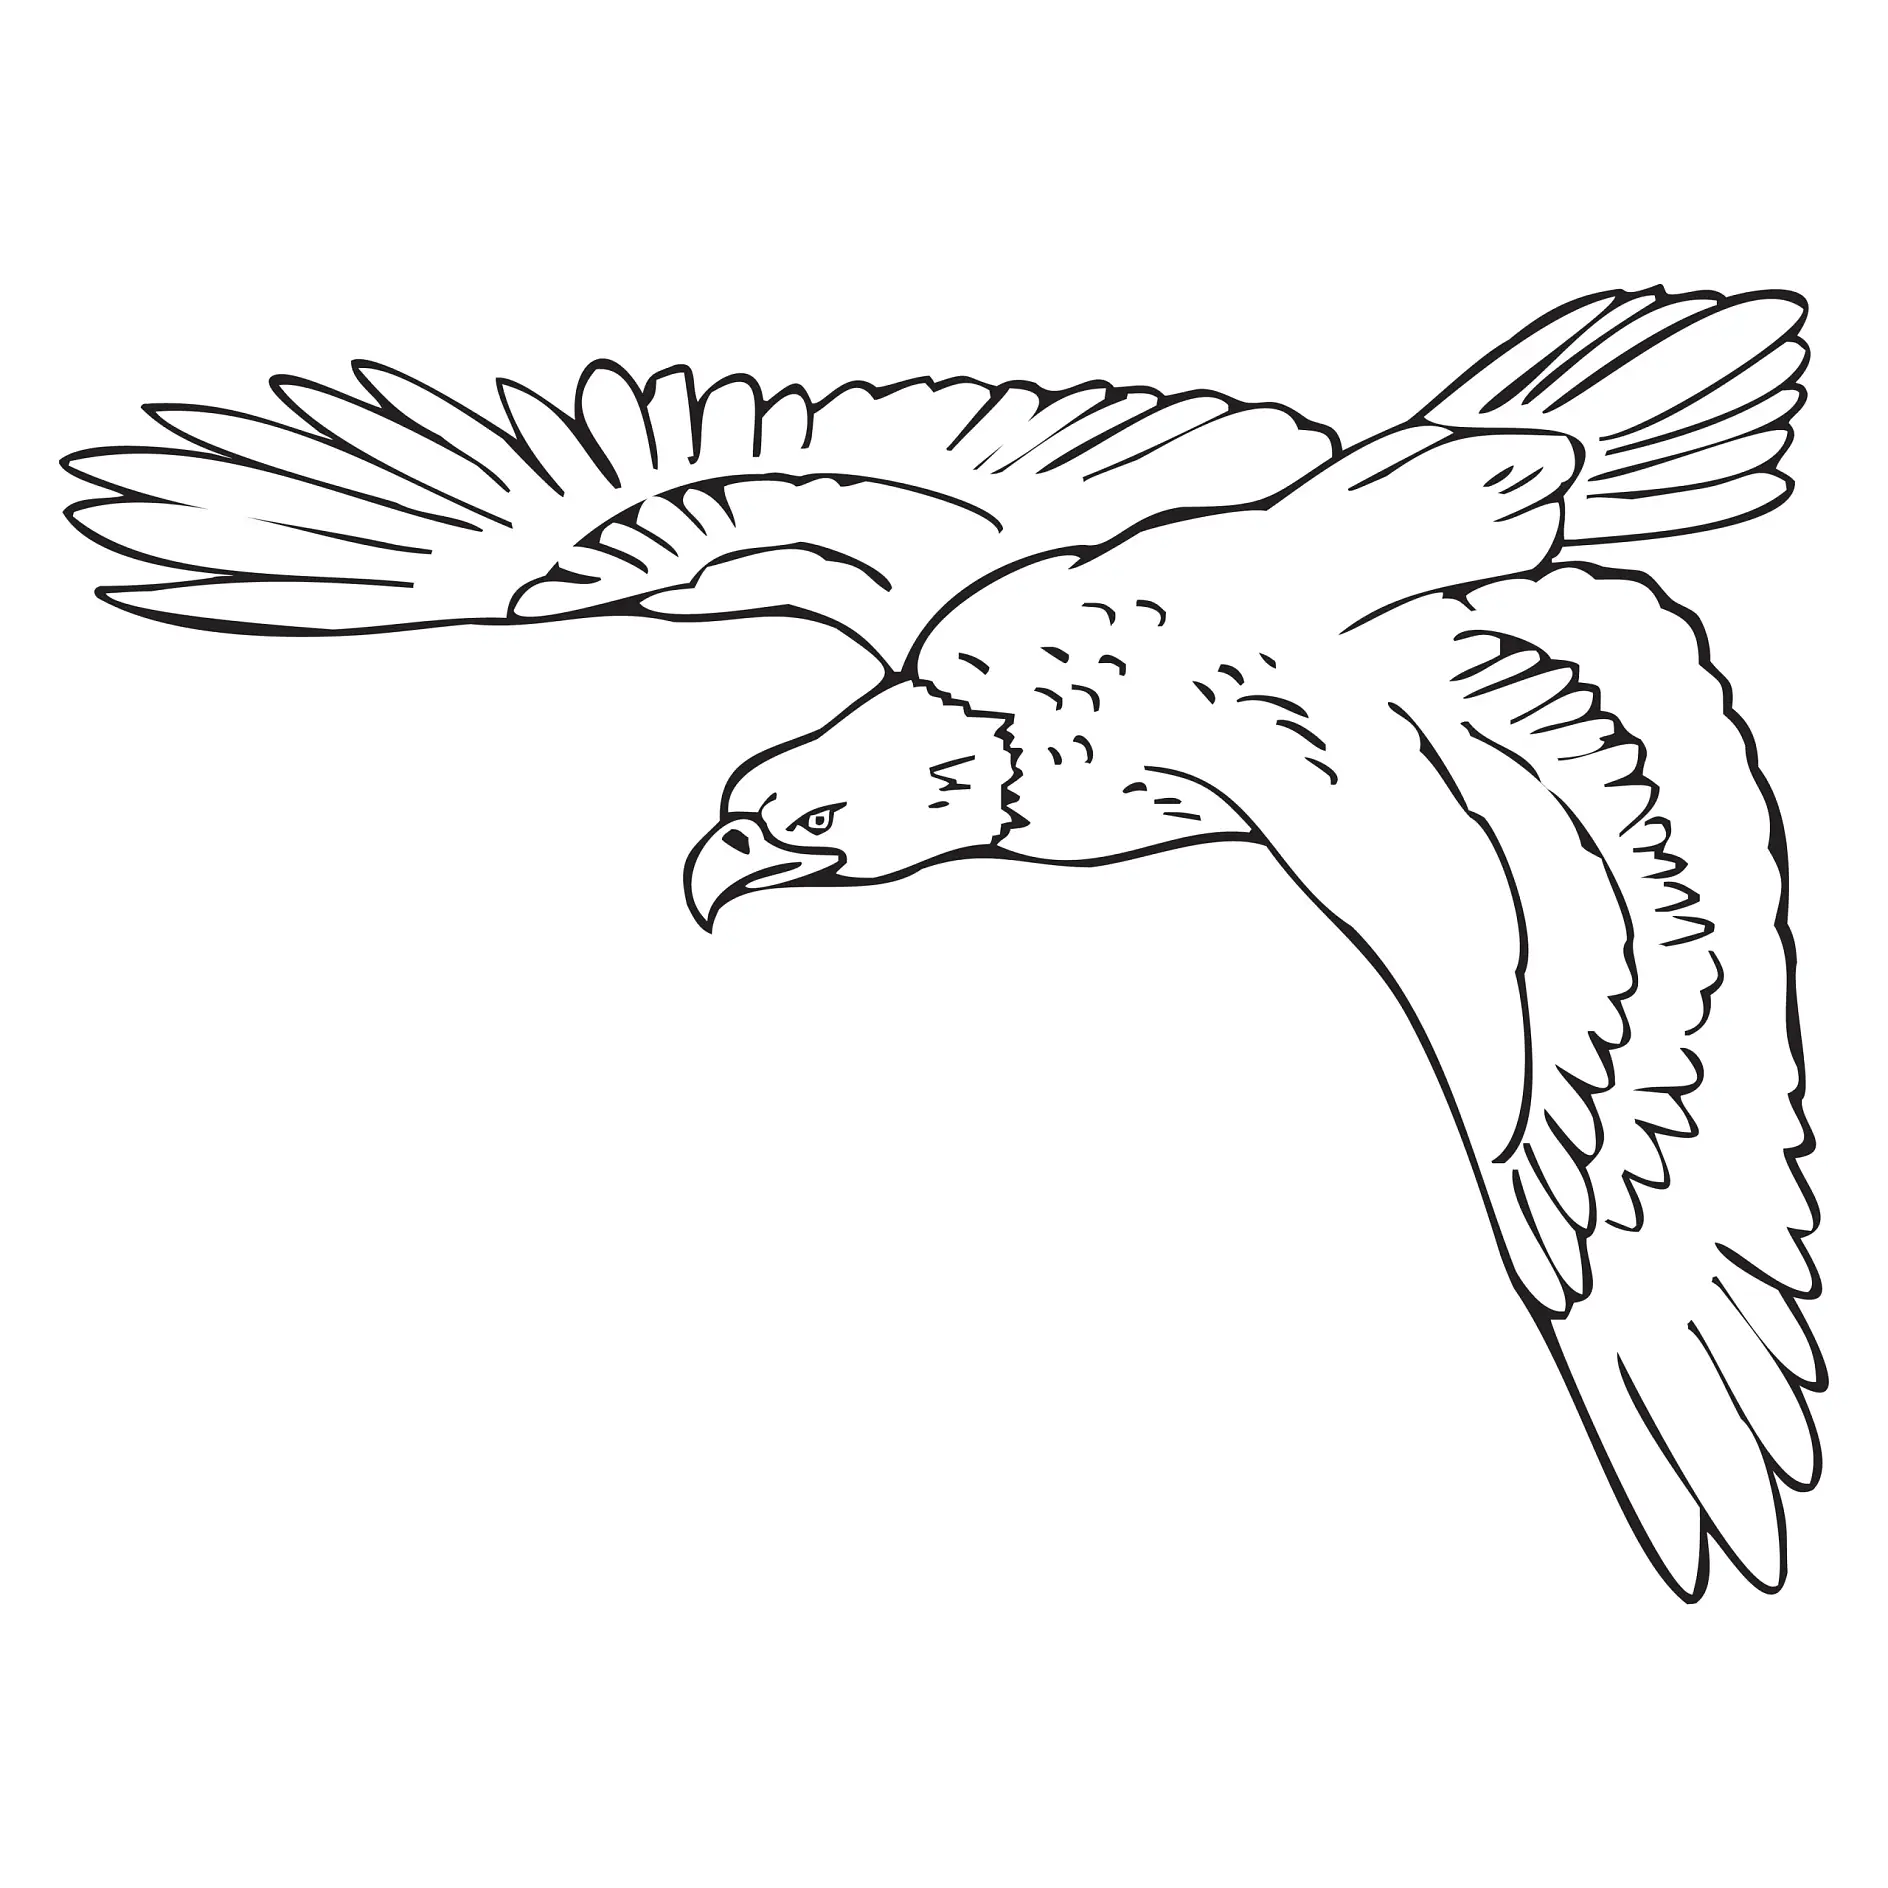 Ausmalbild Adler im Flug mit ausgebreiteten Flügeln